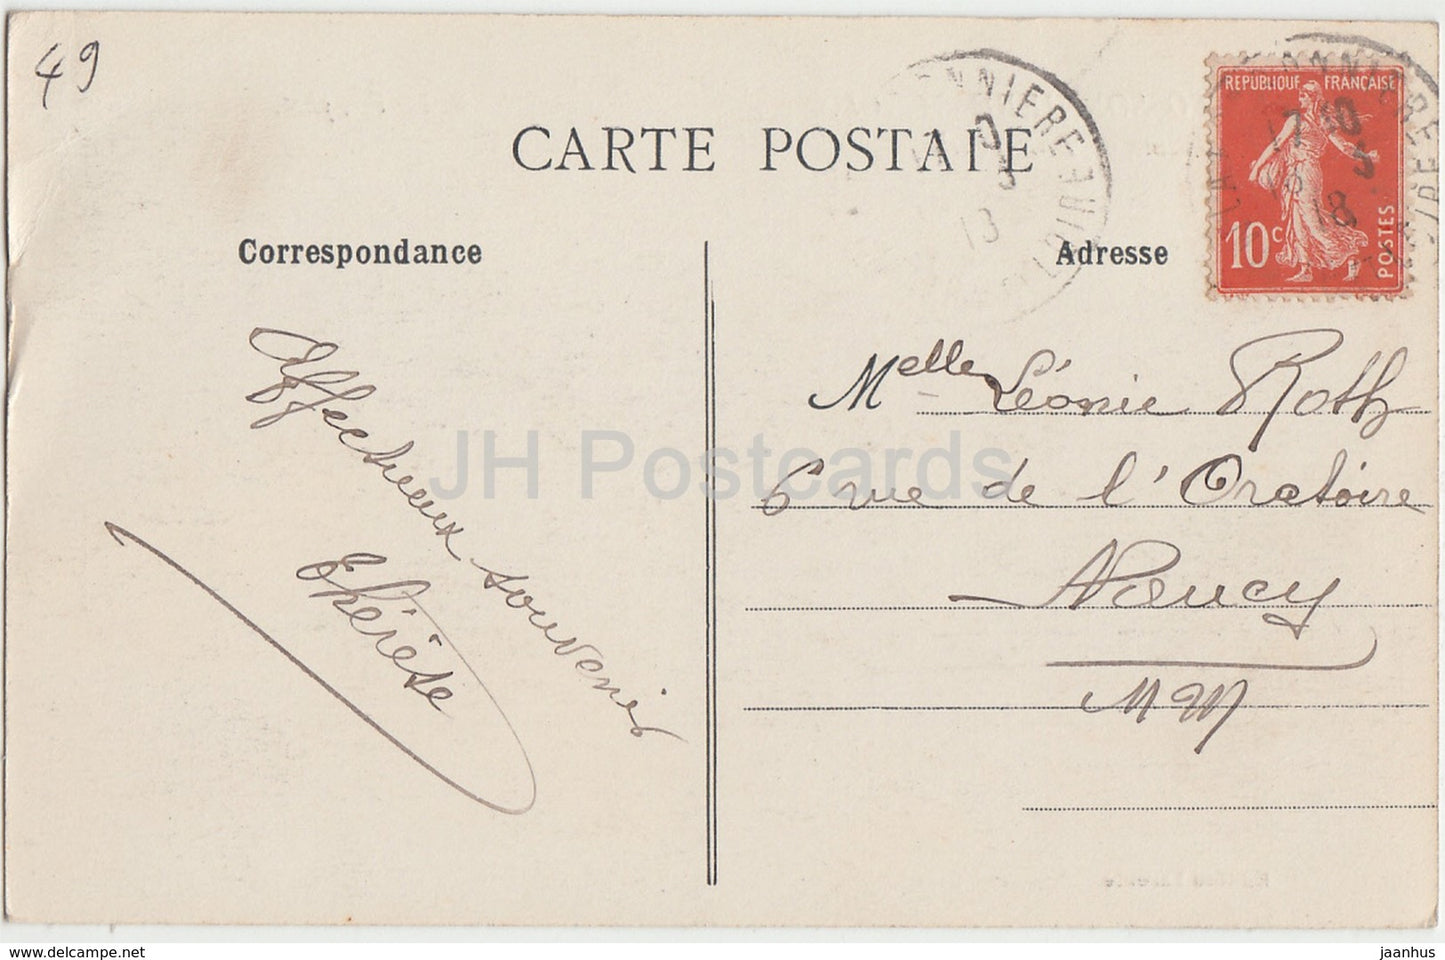 La Possonniere - Chateau de Belle Touche - castle - 60 - 1918 - old postcard - France - used